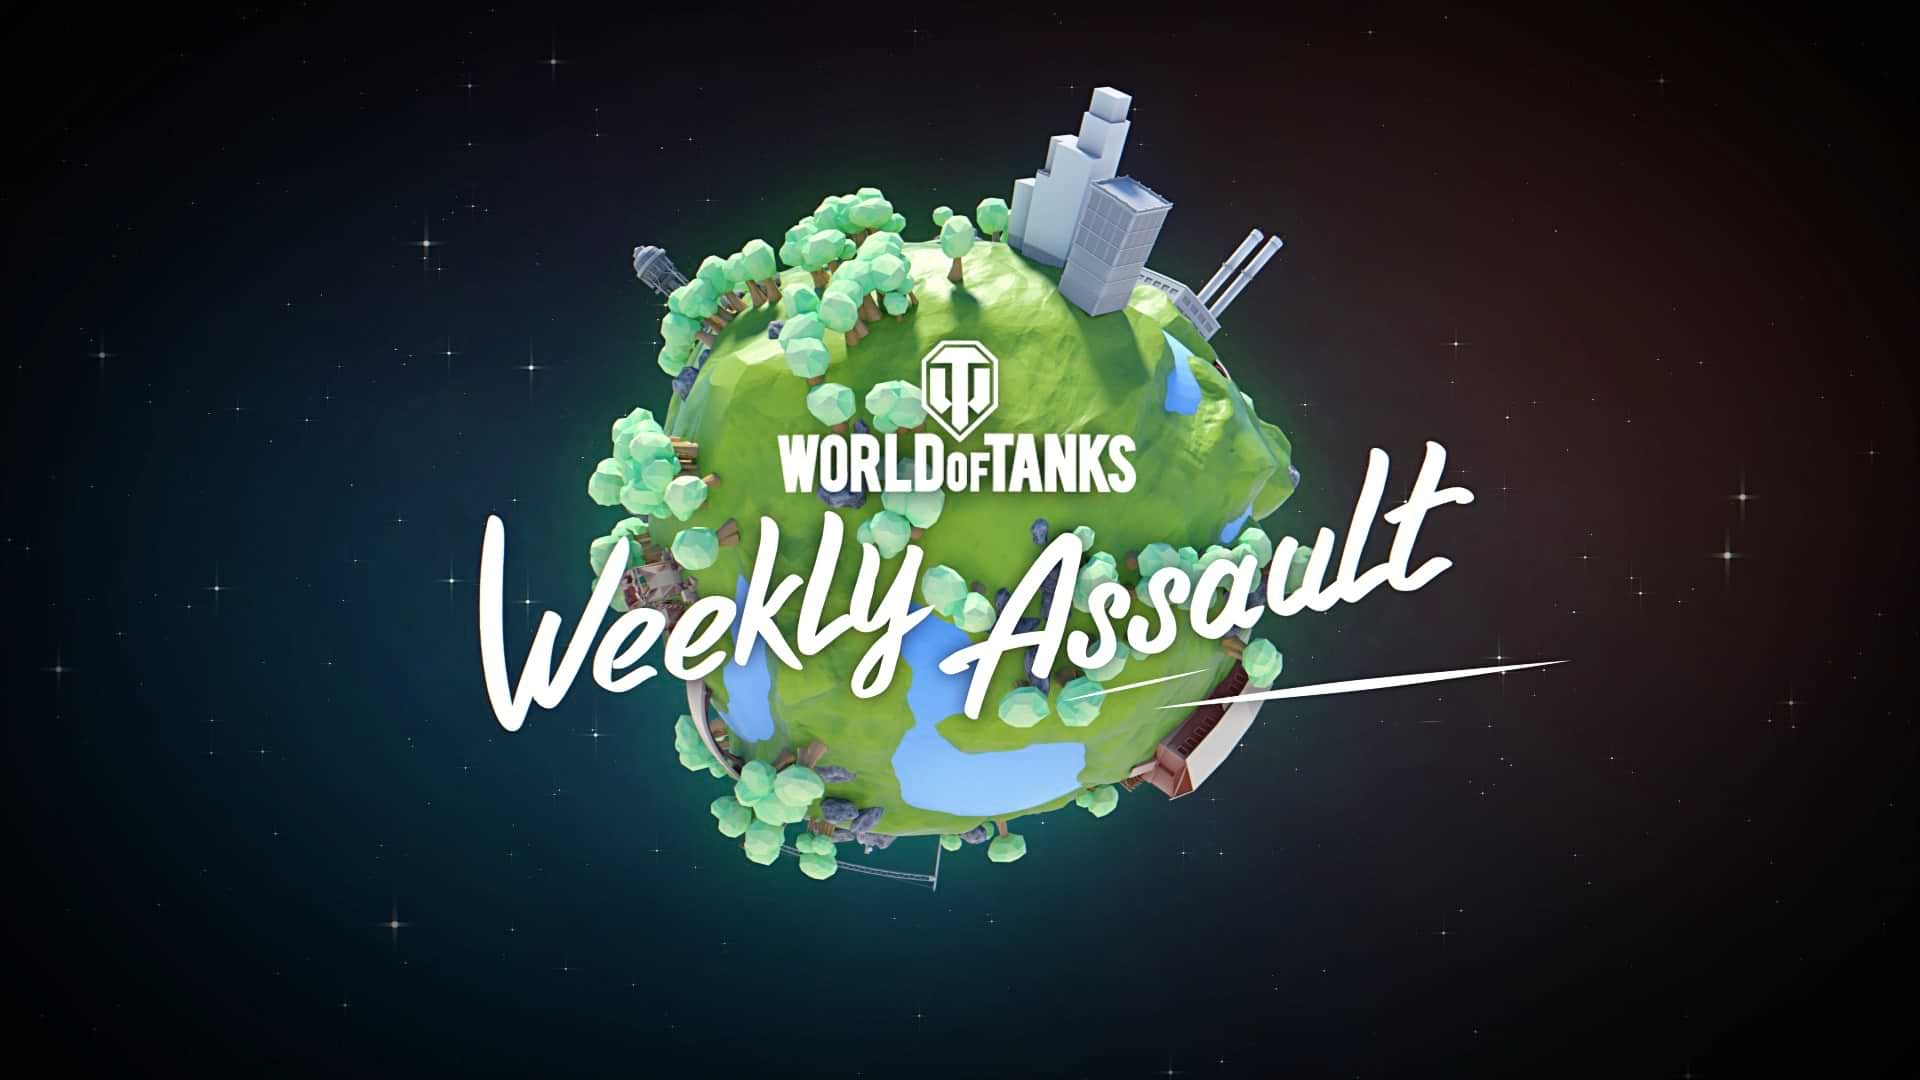 WoT: Weekly Assault